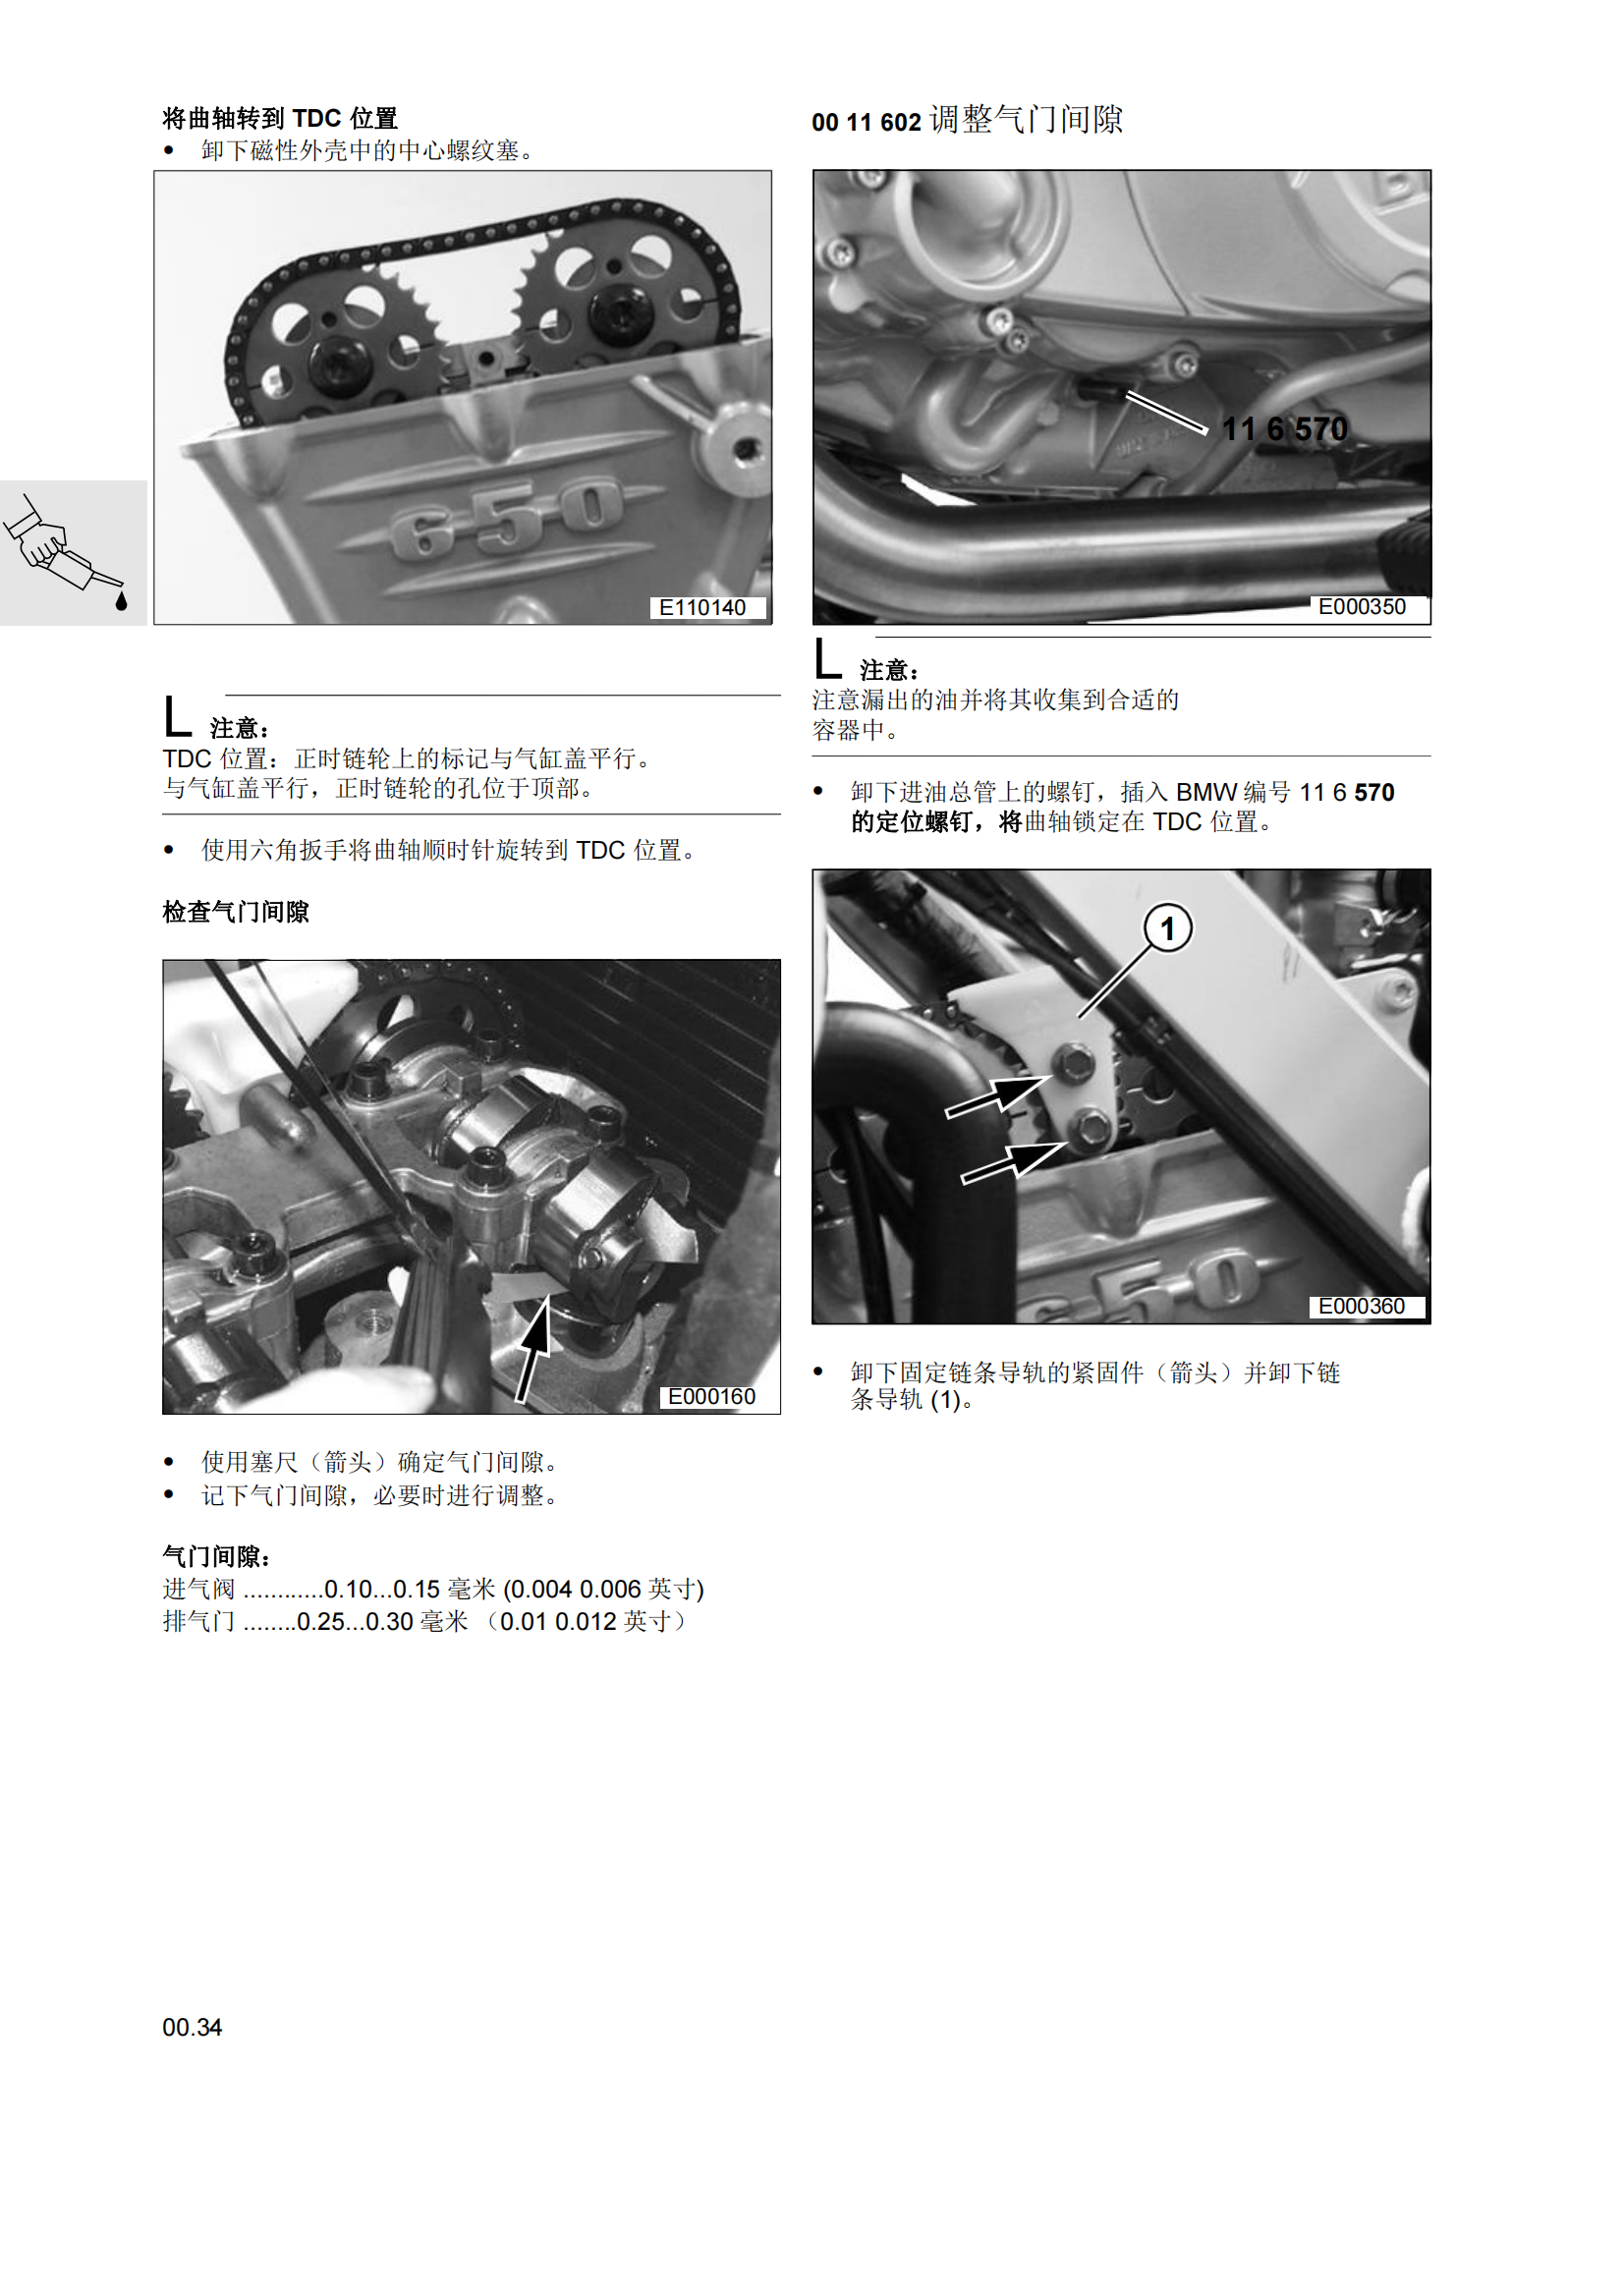 简体中文宝马f650gs维修手册650gs达喀尔 BMW F650GS维修手册插图2